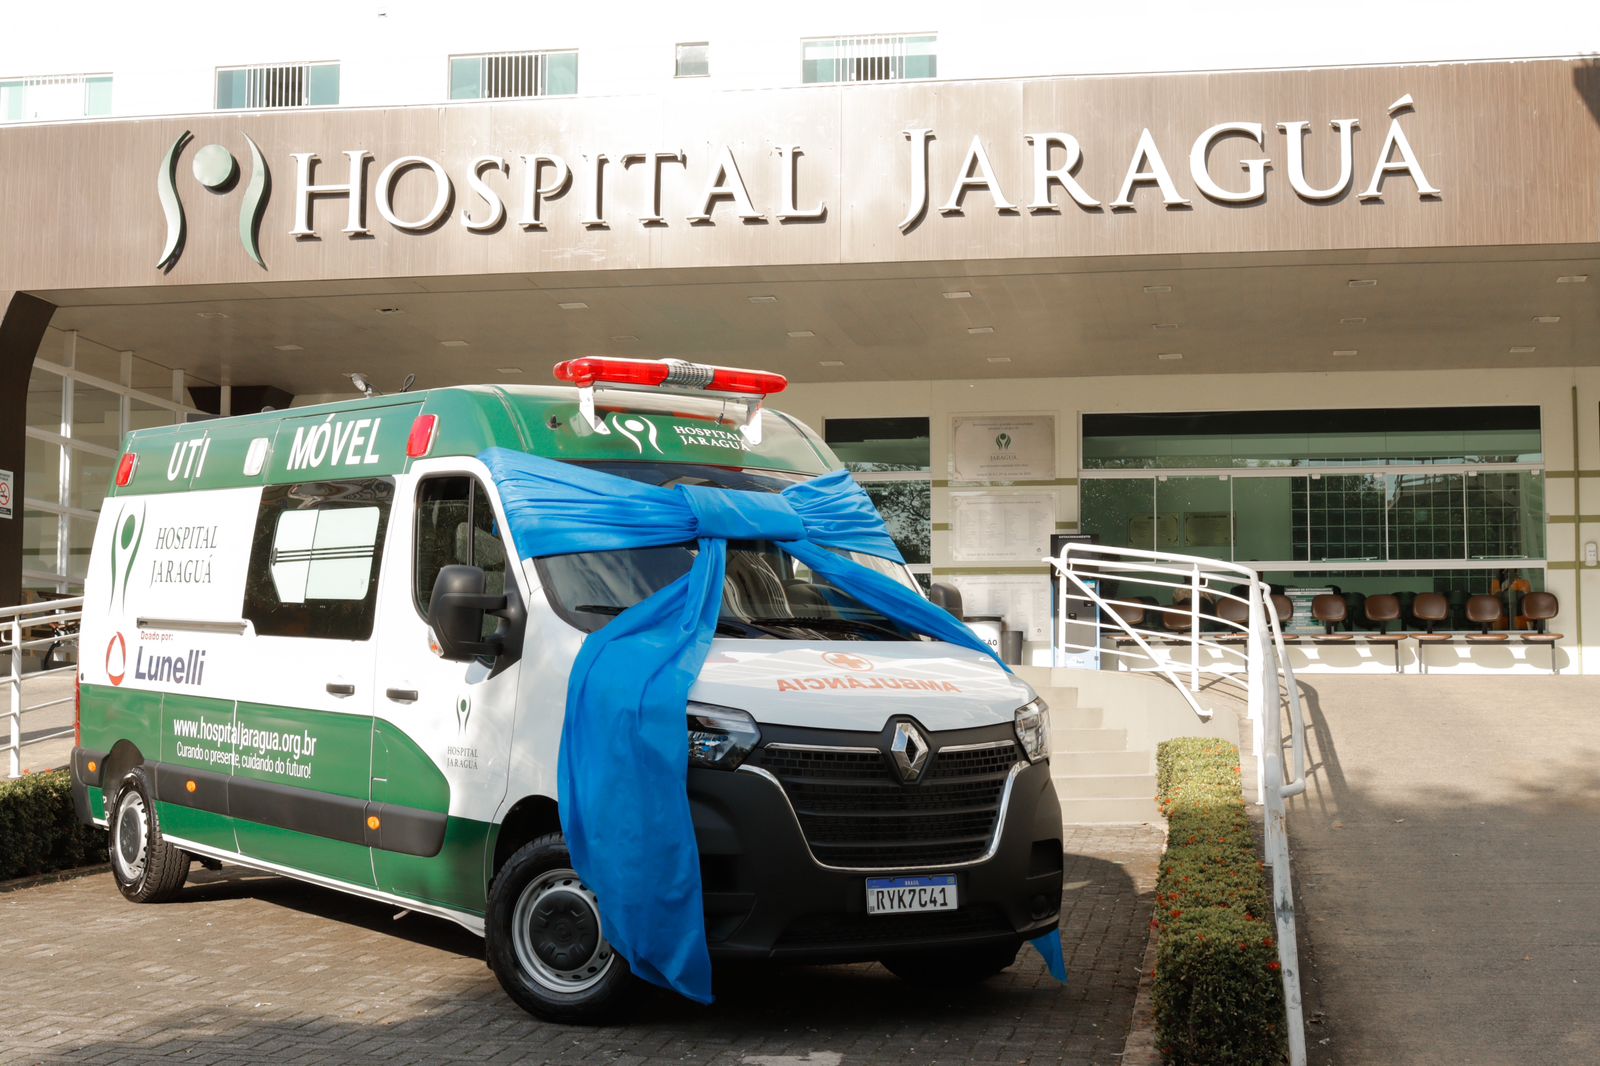 Lunelli faz doação de ambulância para auxiliar no suporte avançado do Hospital Jaraguá